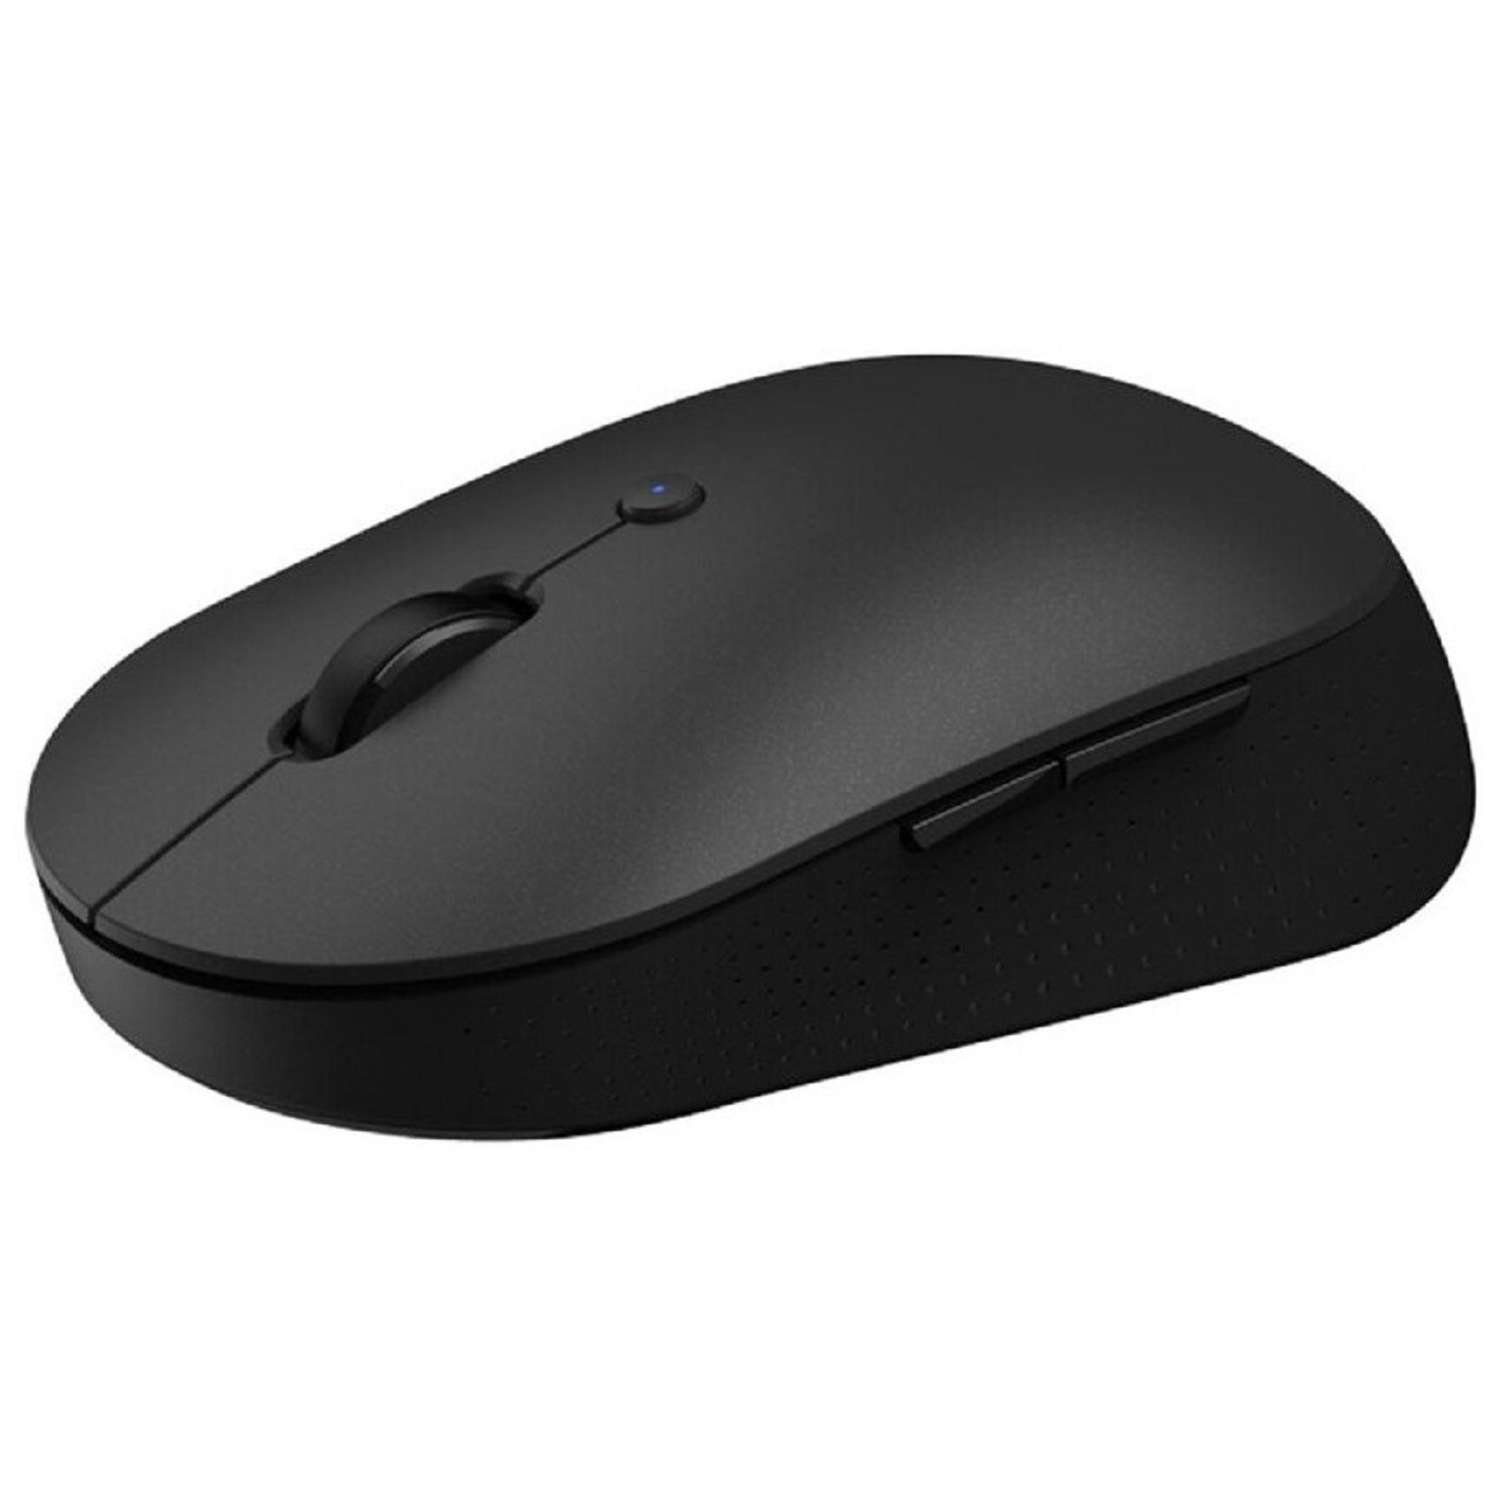 Мышь XIAOMI Mi Dual Mode Wireless Mouse Silent Edition беспроводная 1300 dpi usb чёрная - фото 6